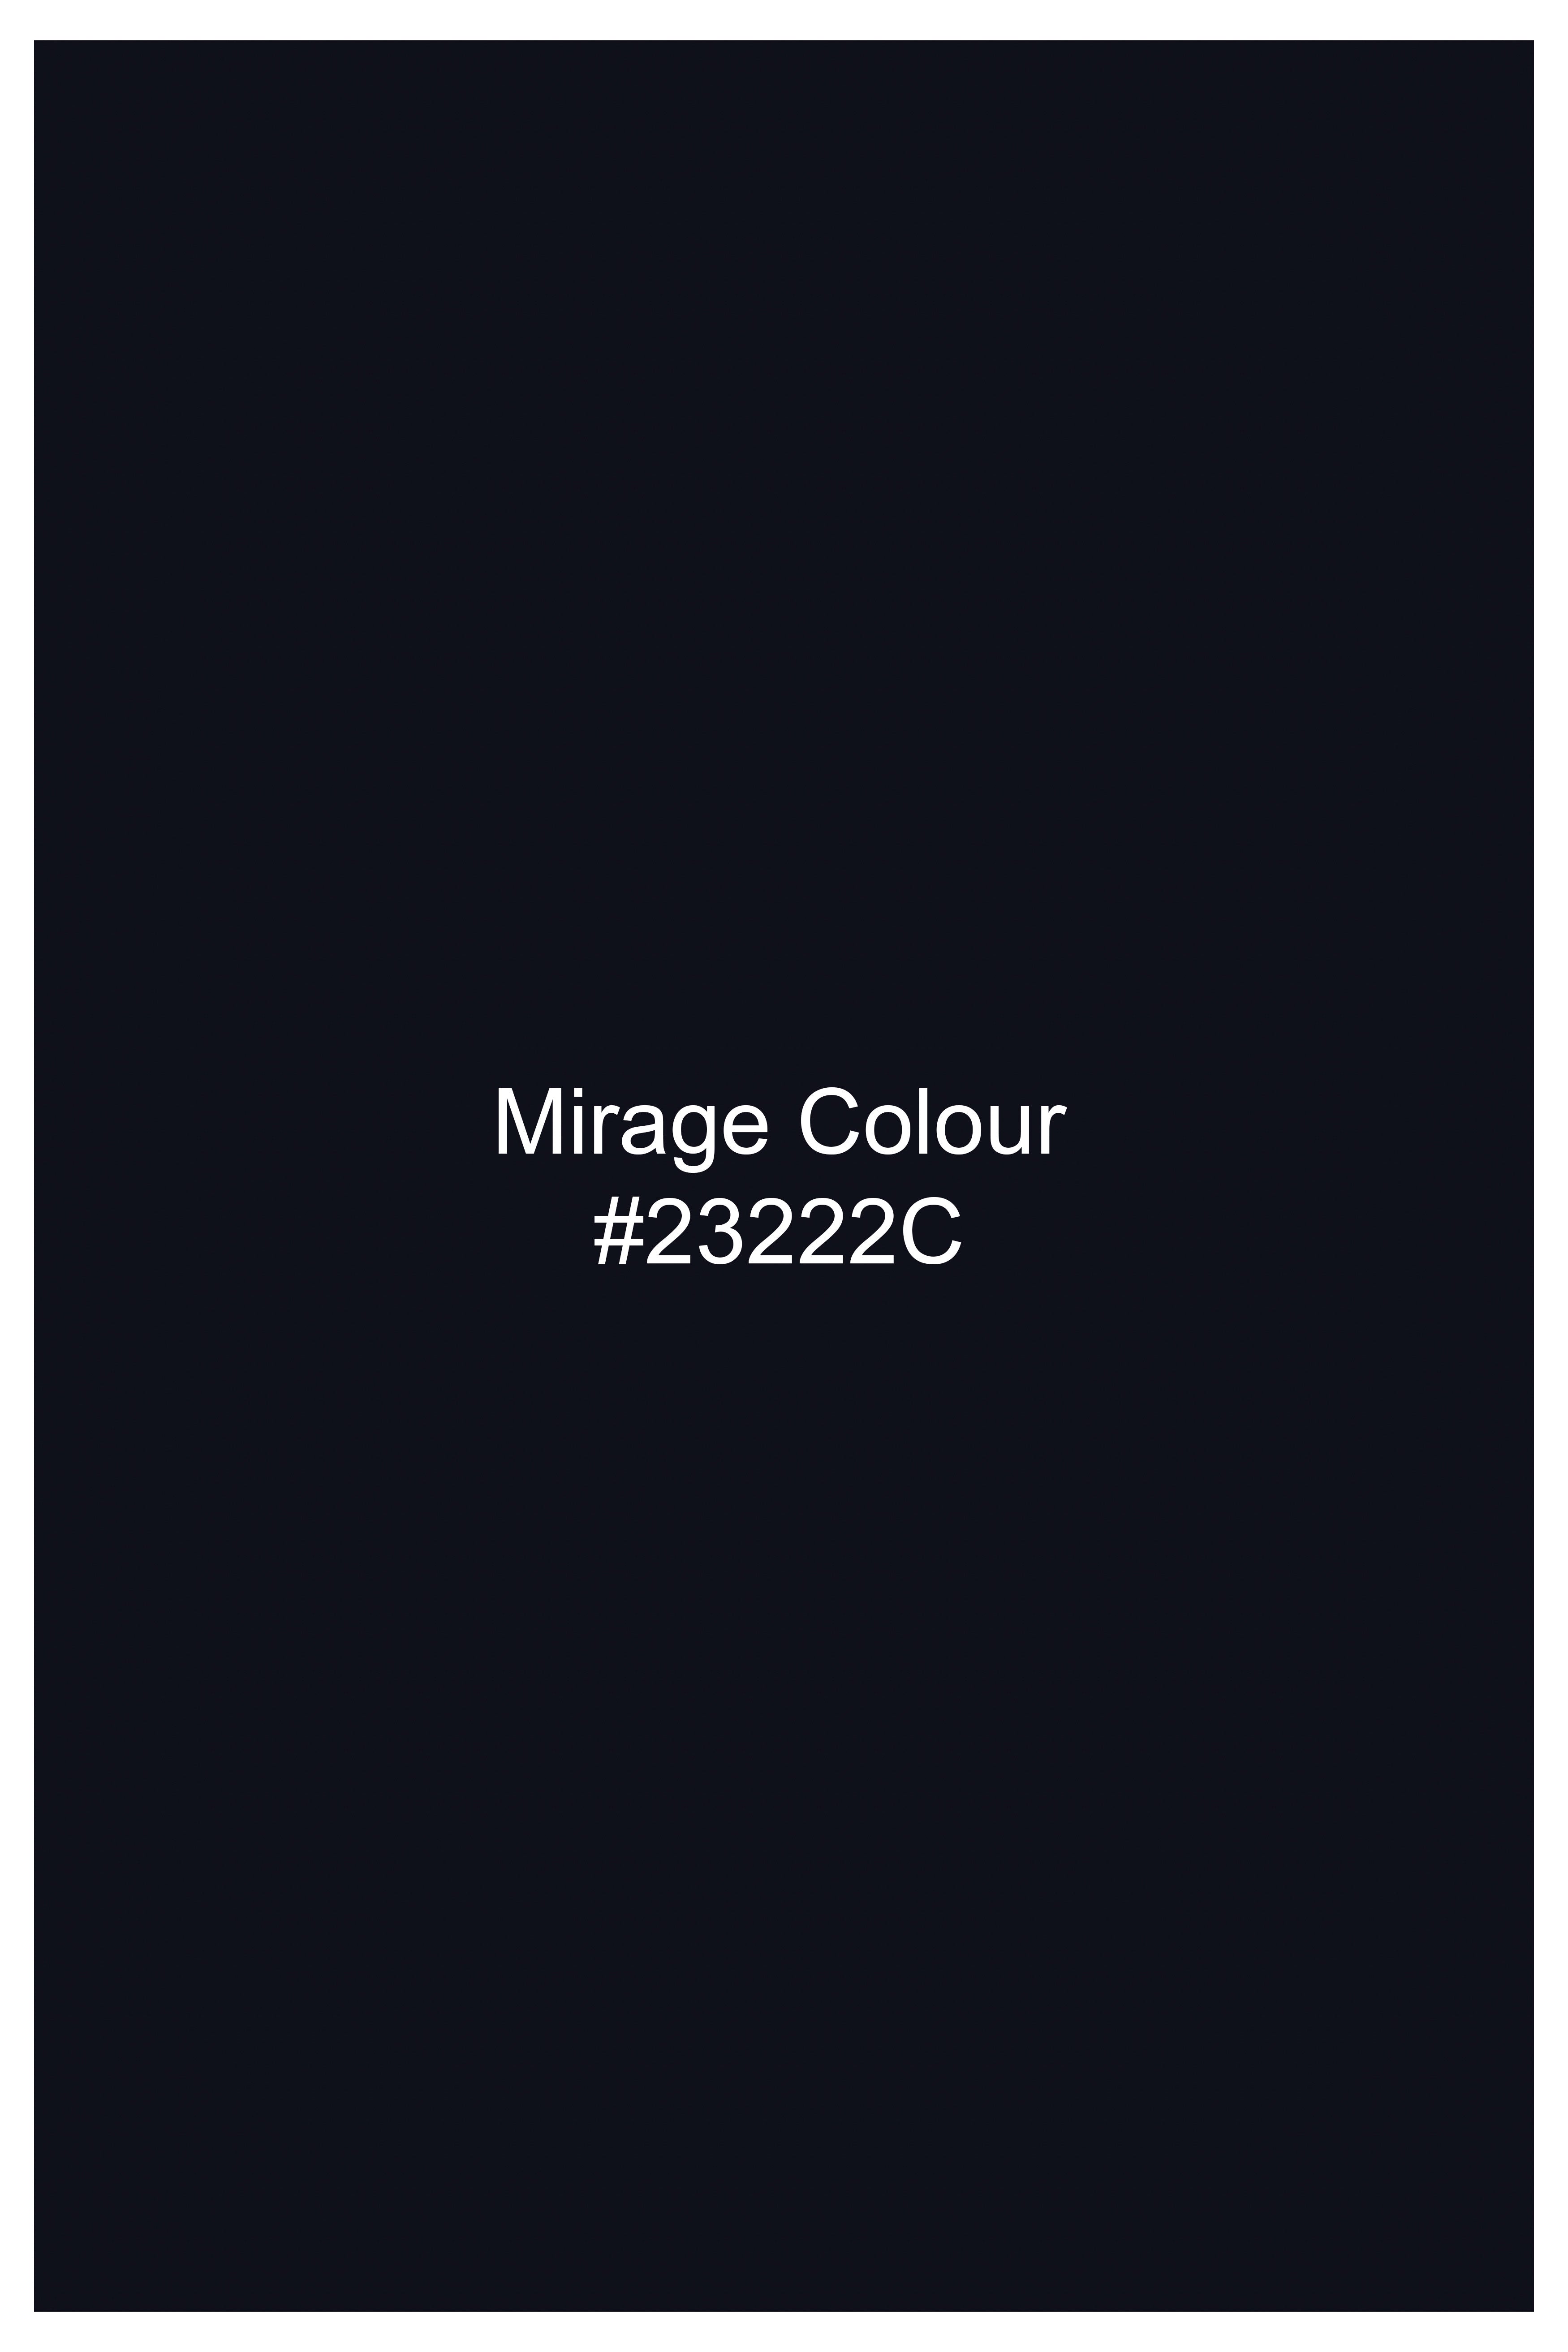 Mirage Blue Premium Cotton Designer Suit ST2759-D188-36,ST2759-D188-38,ST2759-D188-40,ST2759-D188-42,ST2759-D188-44,ST2759-D188-46,ST2759-D188-48,ST2759-D188-50,ST2759-D188-52,ST2759-D188-54,ST2759-D188-56,ST2759-D188-58,ST2759-D188-60